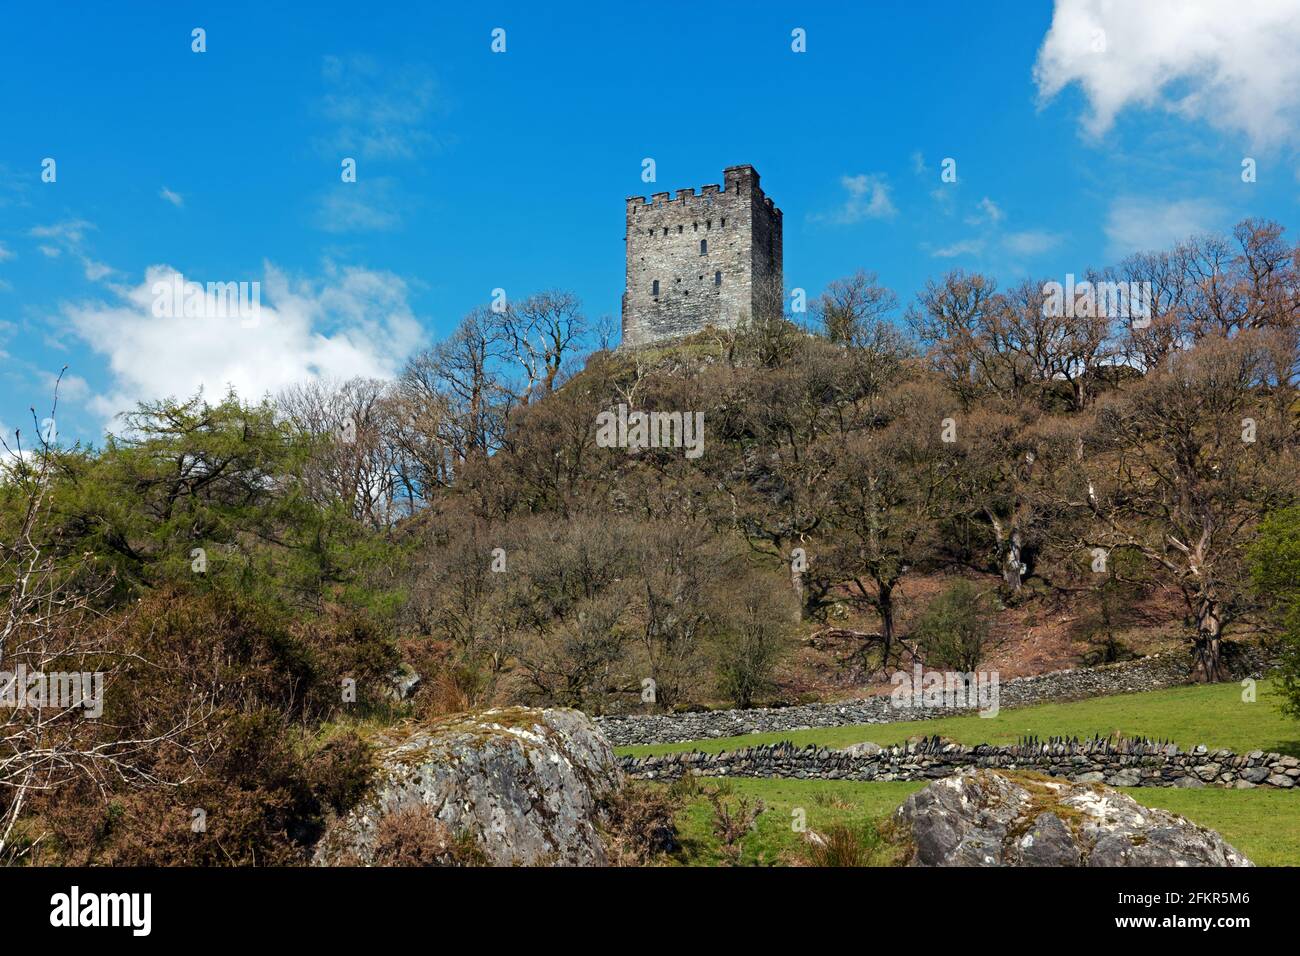 Il castello di Dolwyddelan è situato nei pressi di Dolwyddelan nel Galles del Nord. Esso è stato in parte costruito agli inizi del XIII secolo dal principe Llywelyn ma successivamente modificati. Foto Stock